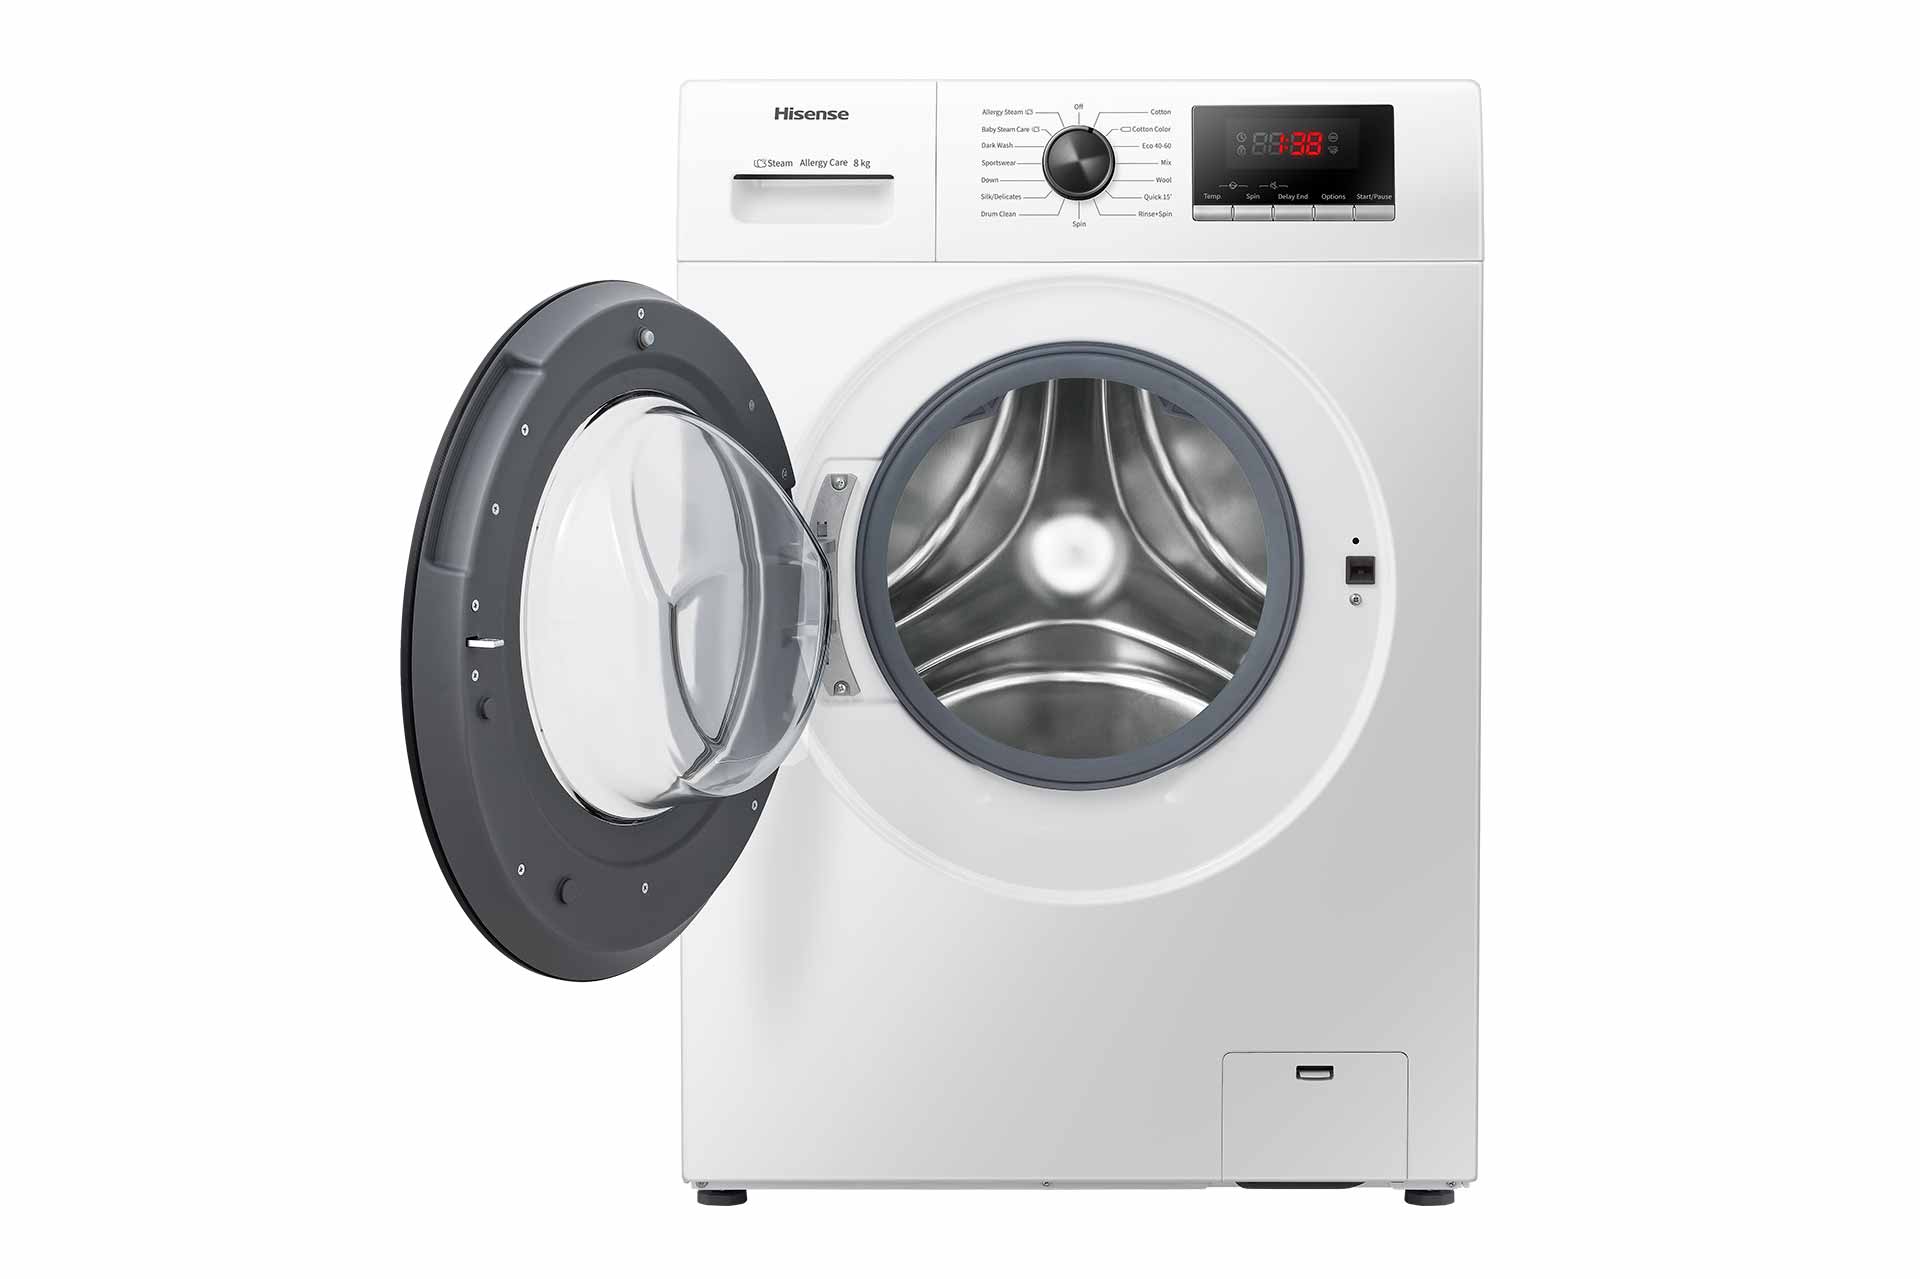 Hisense - Máquina de lavar WFPV8012EM